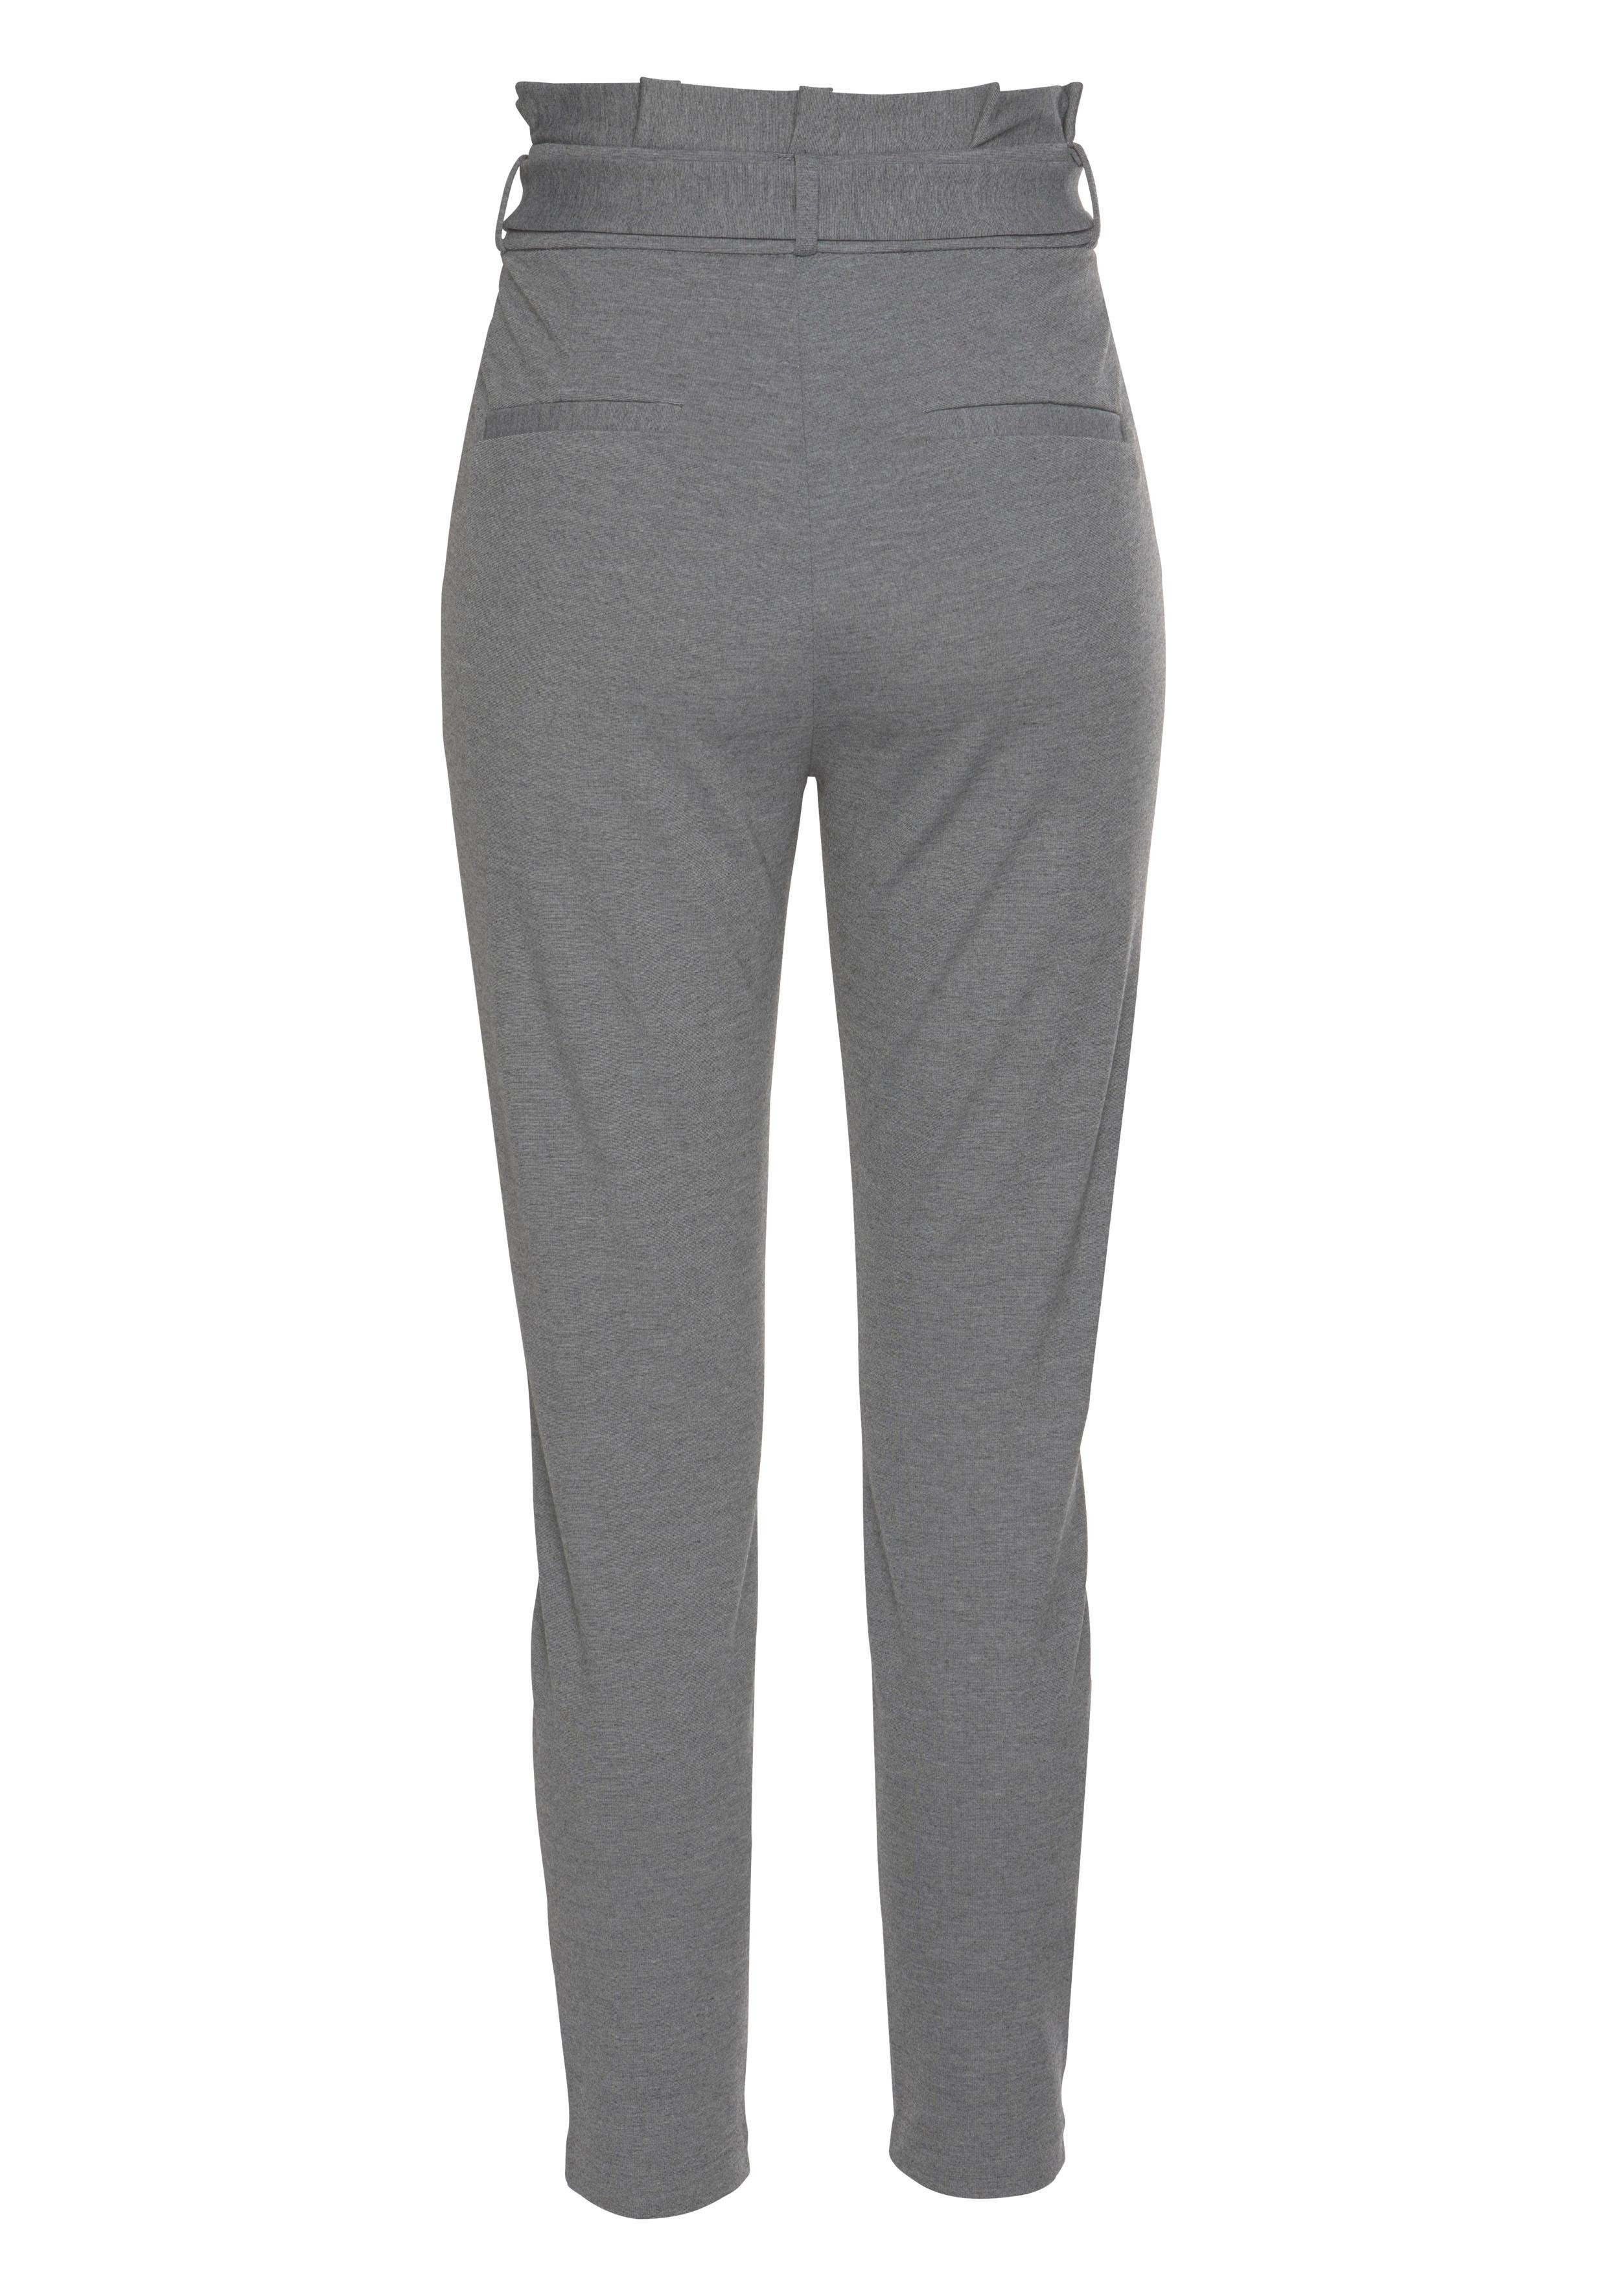 Moda PAPERBAG grey Pants VMEVA Jogger medium Vero melange